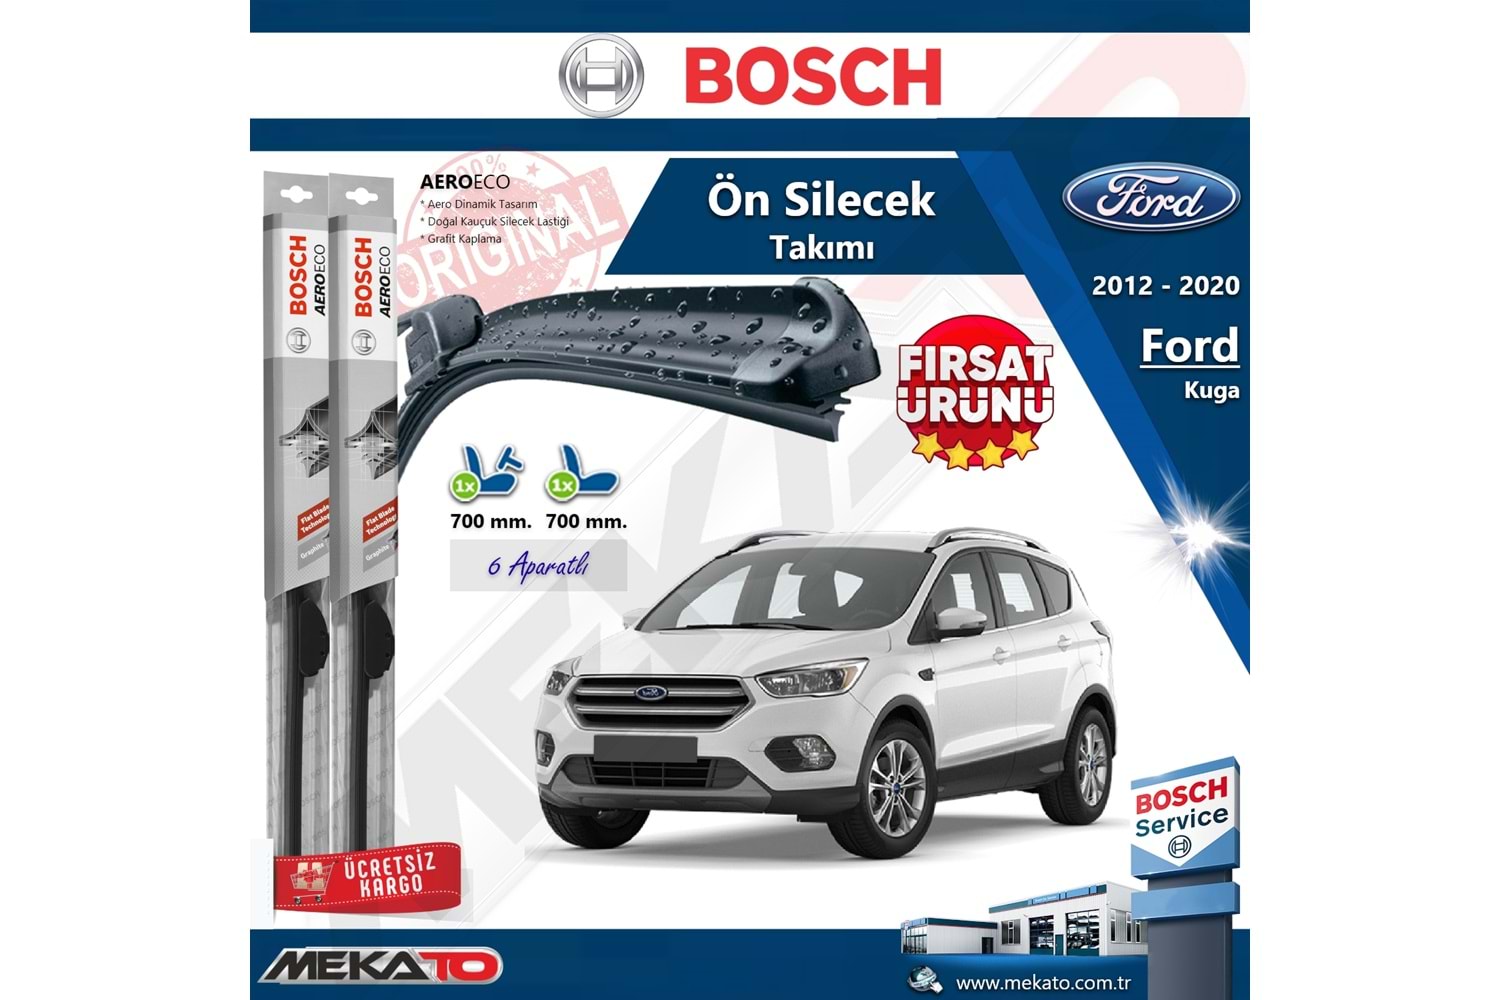 Ford Kuga Ön Silecek Takımı Bosch Aero Eco 2012-2020